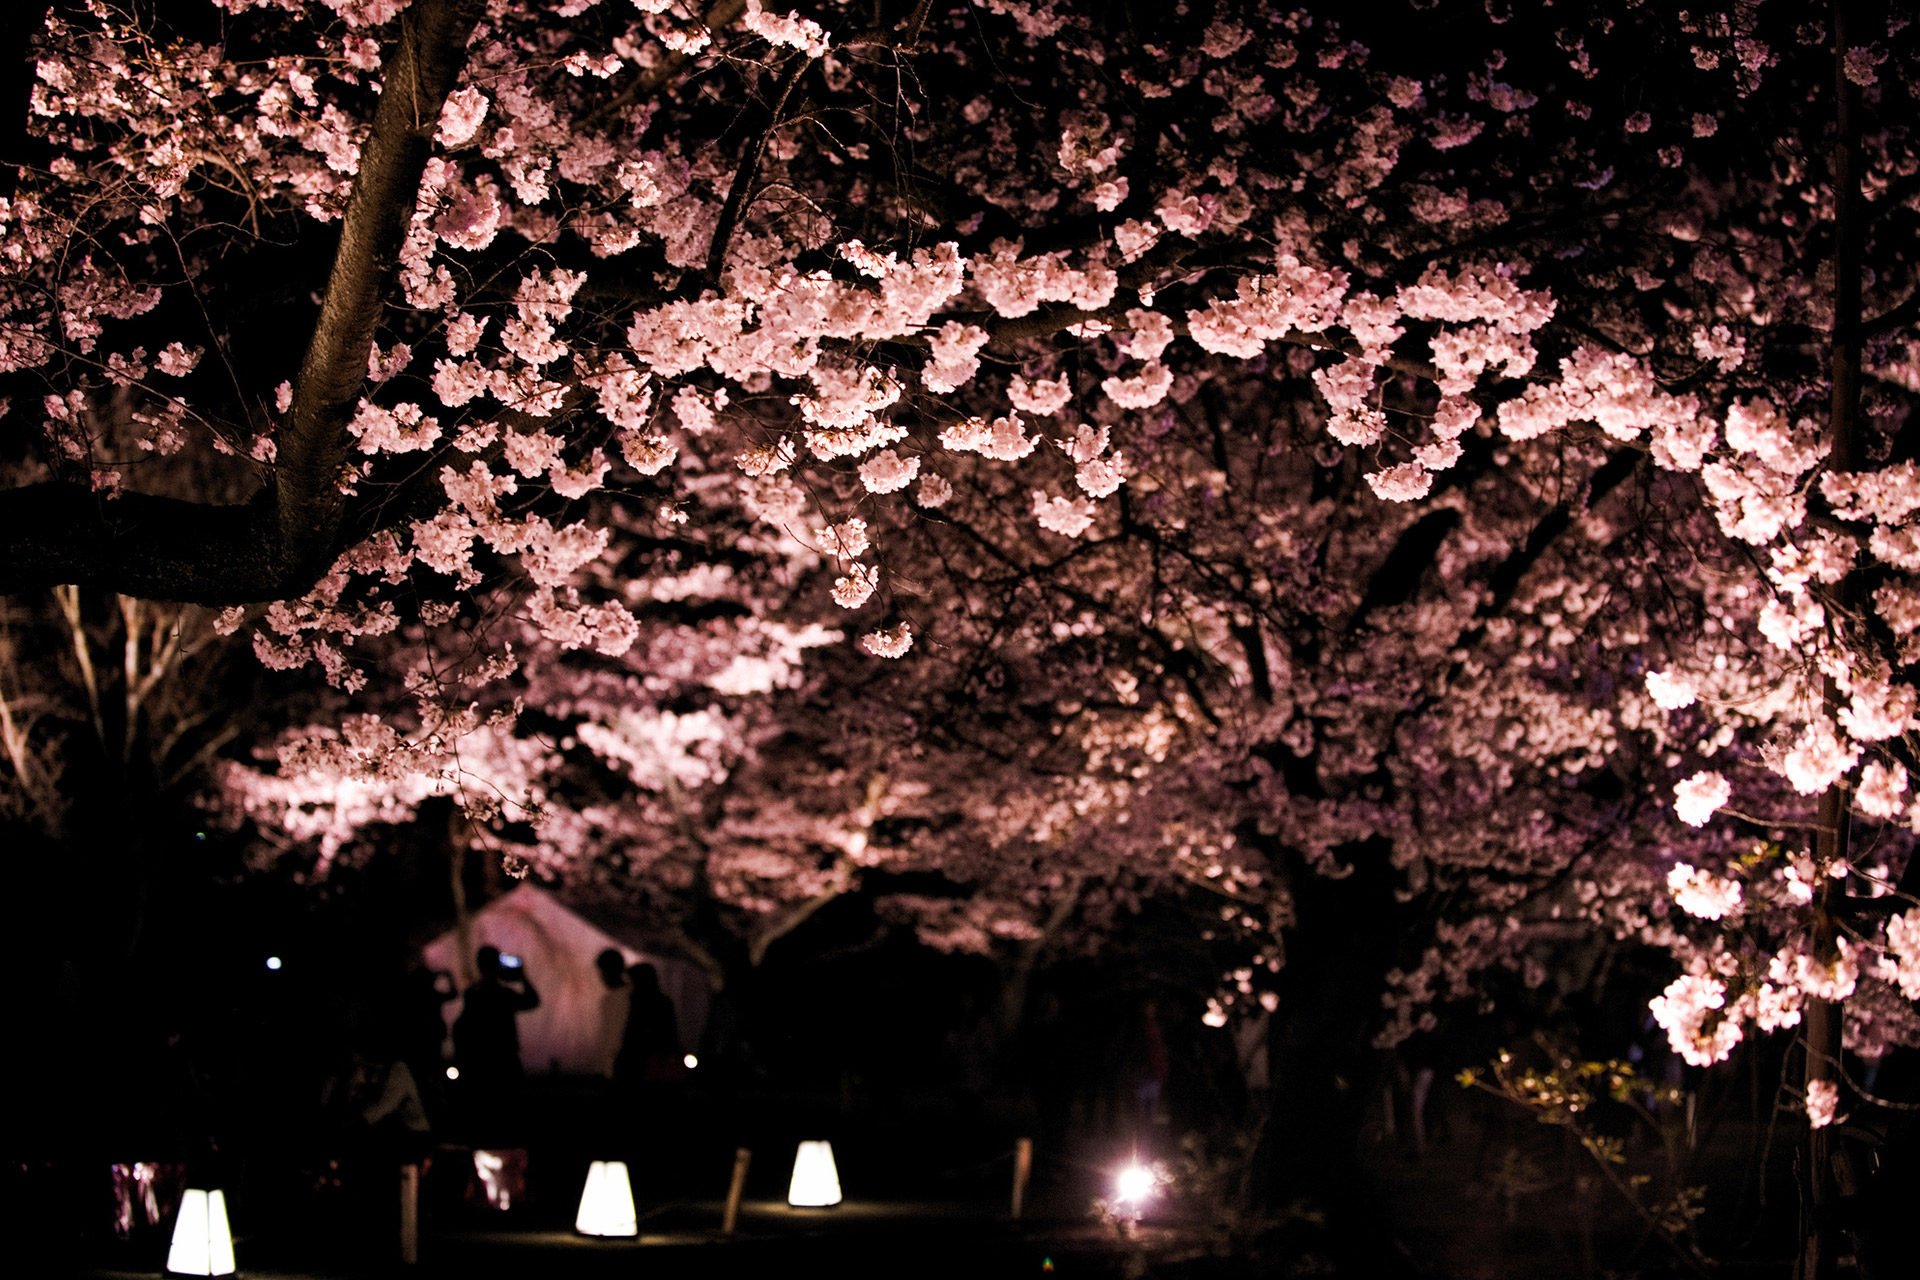 京都府内6位の桜の名所 二条城から見る美しい景色は Caedekyoto カエデ京都 紅葉と伝統美を引き継ぐバッグ